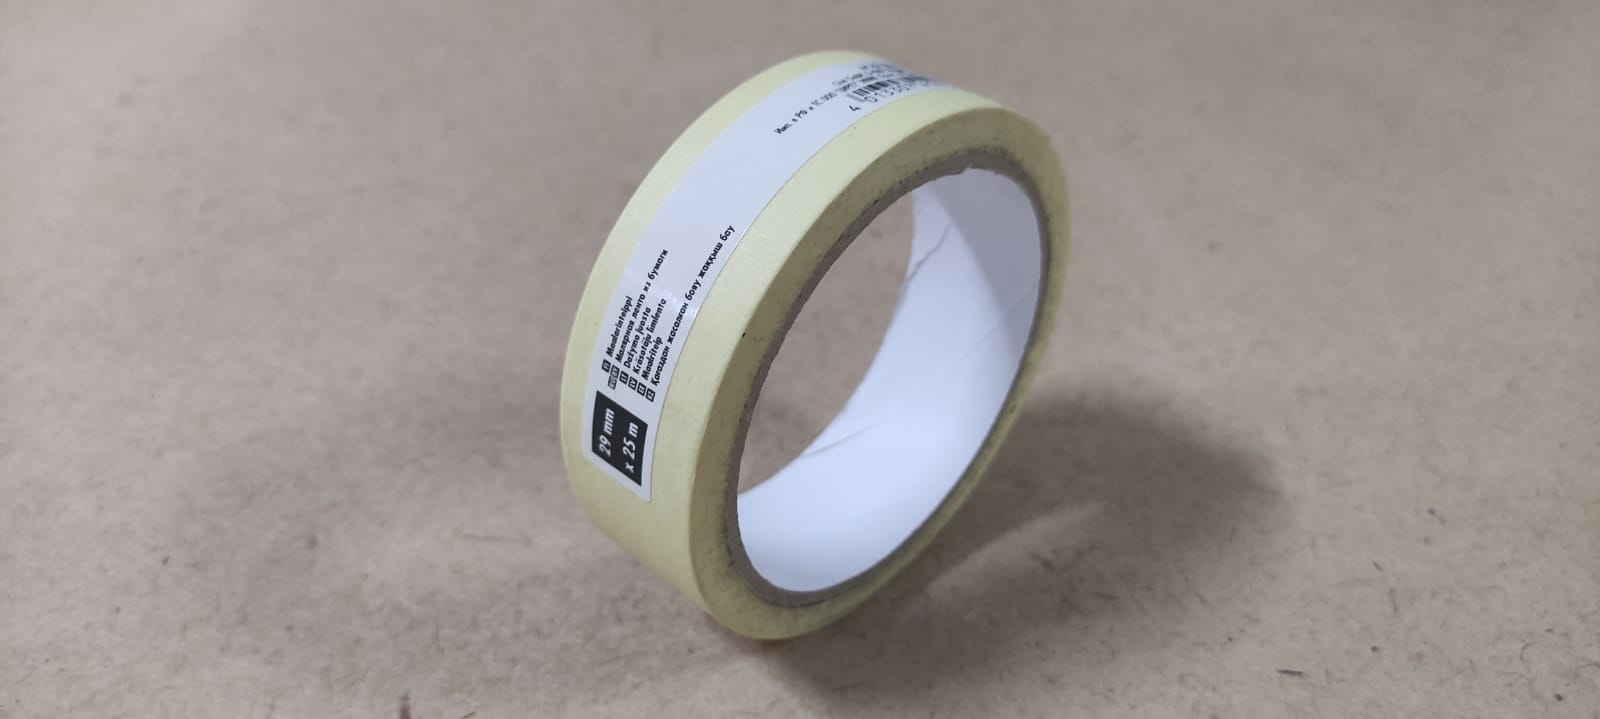 Малярная лента из бумаги 29 мм 25м Color Expert, термостойкая до 40°C (96000312)